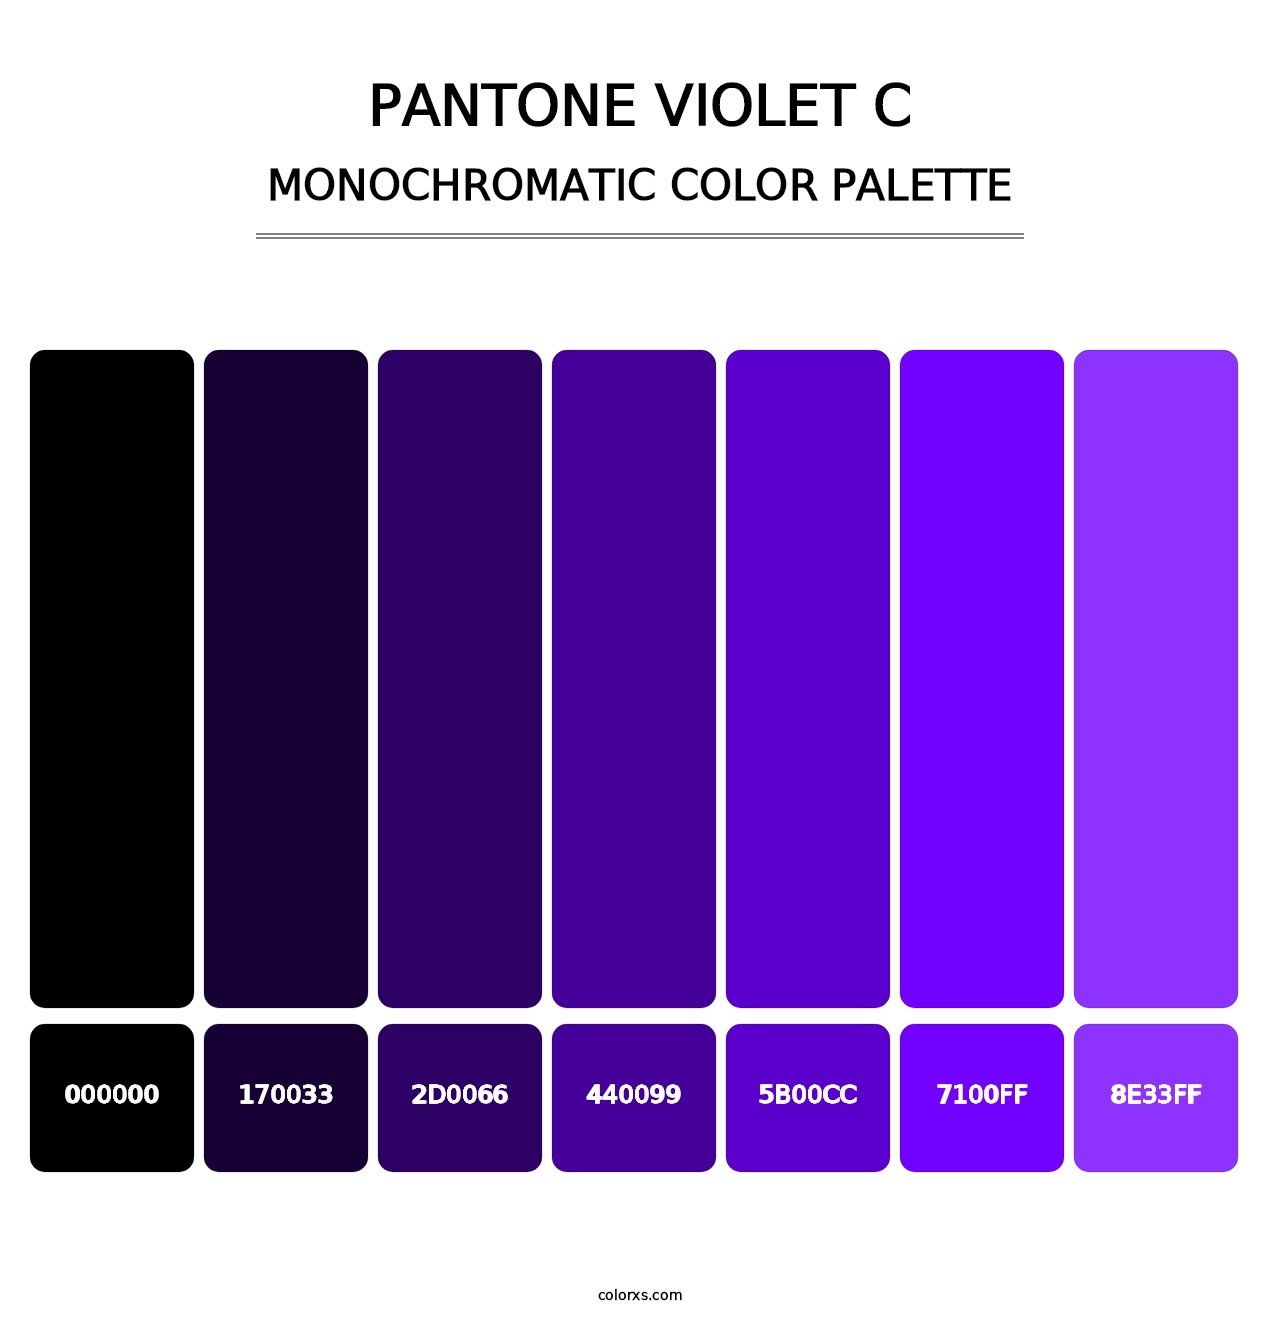 PANTONE Violet C - Monochromatic Color Palette